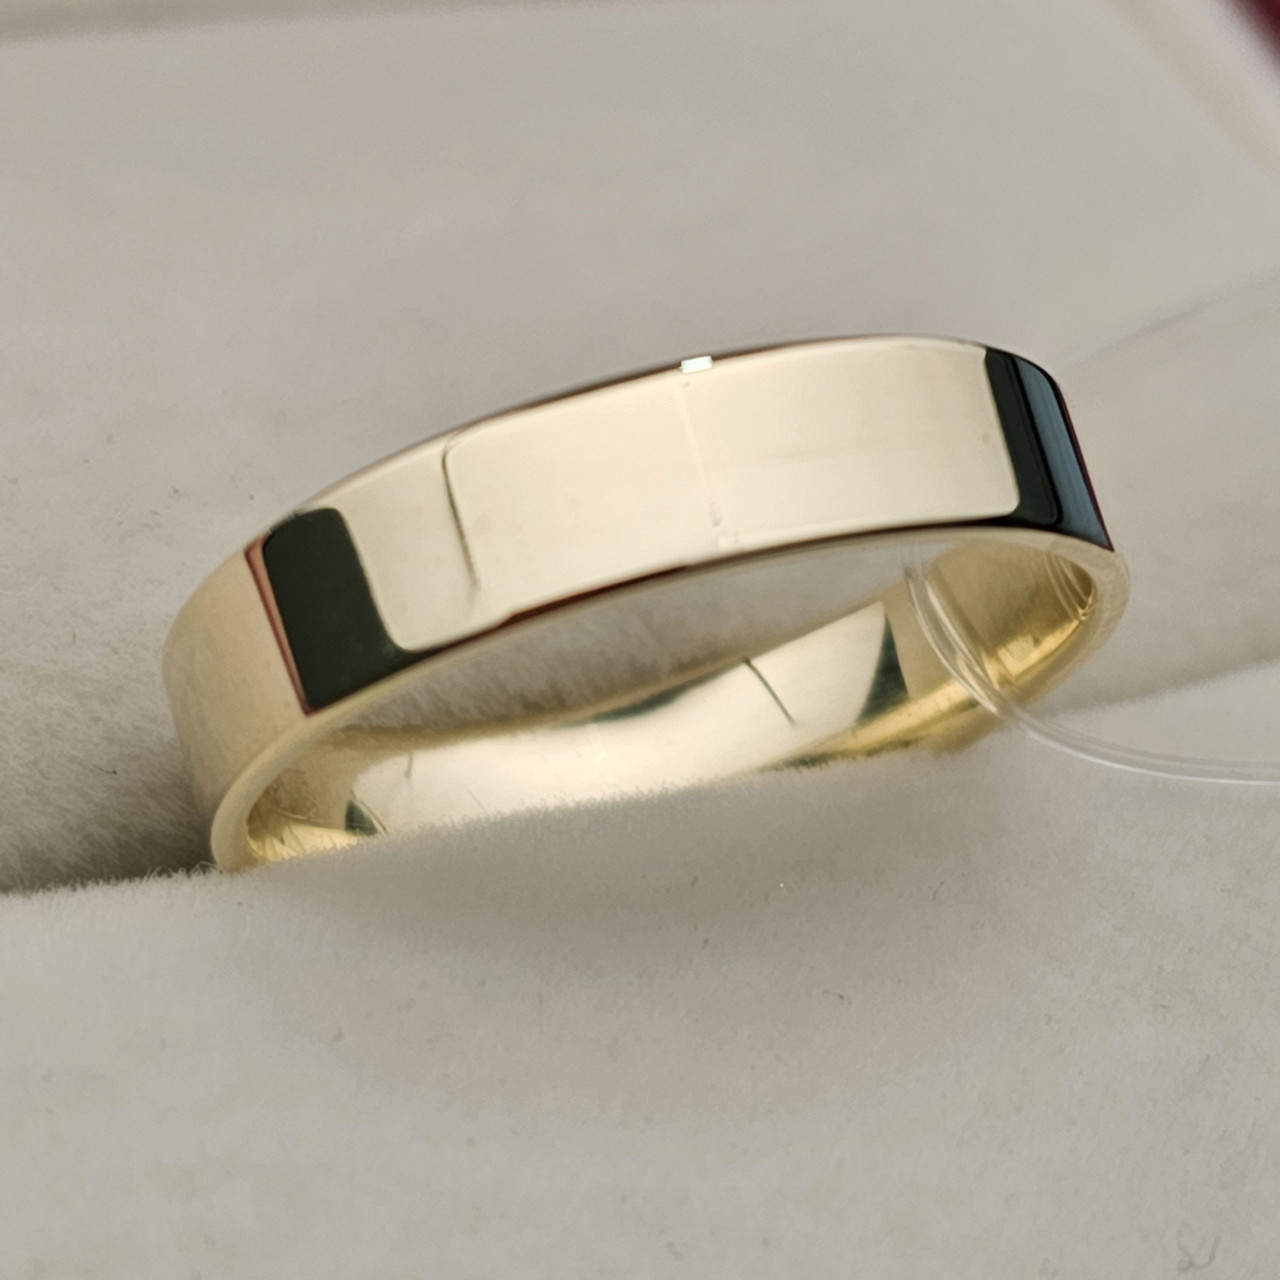 Обручальное кольцо 3.12 гр, размер 20.5/4мм Желтое золото 585 проба